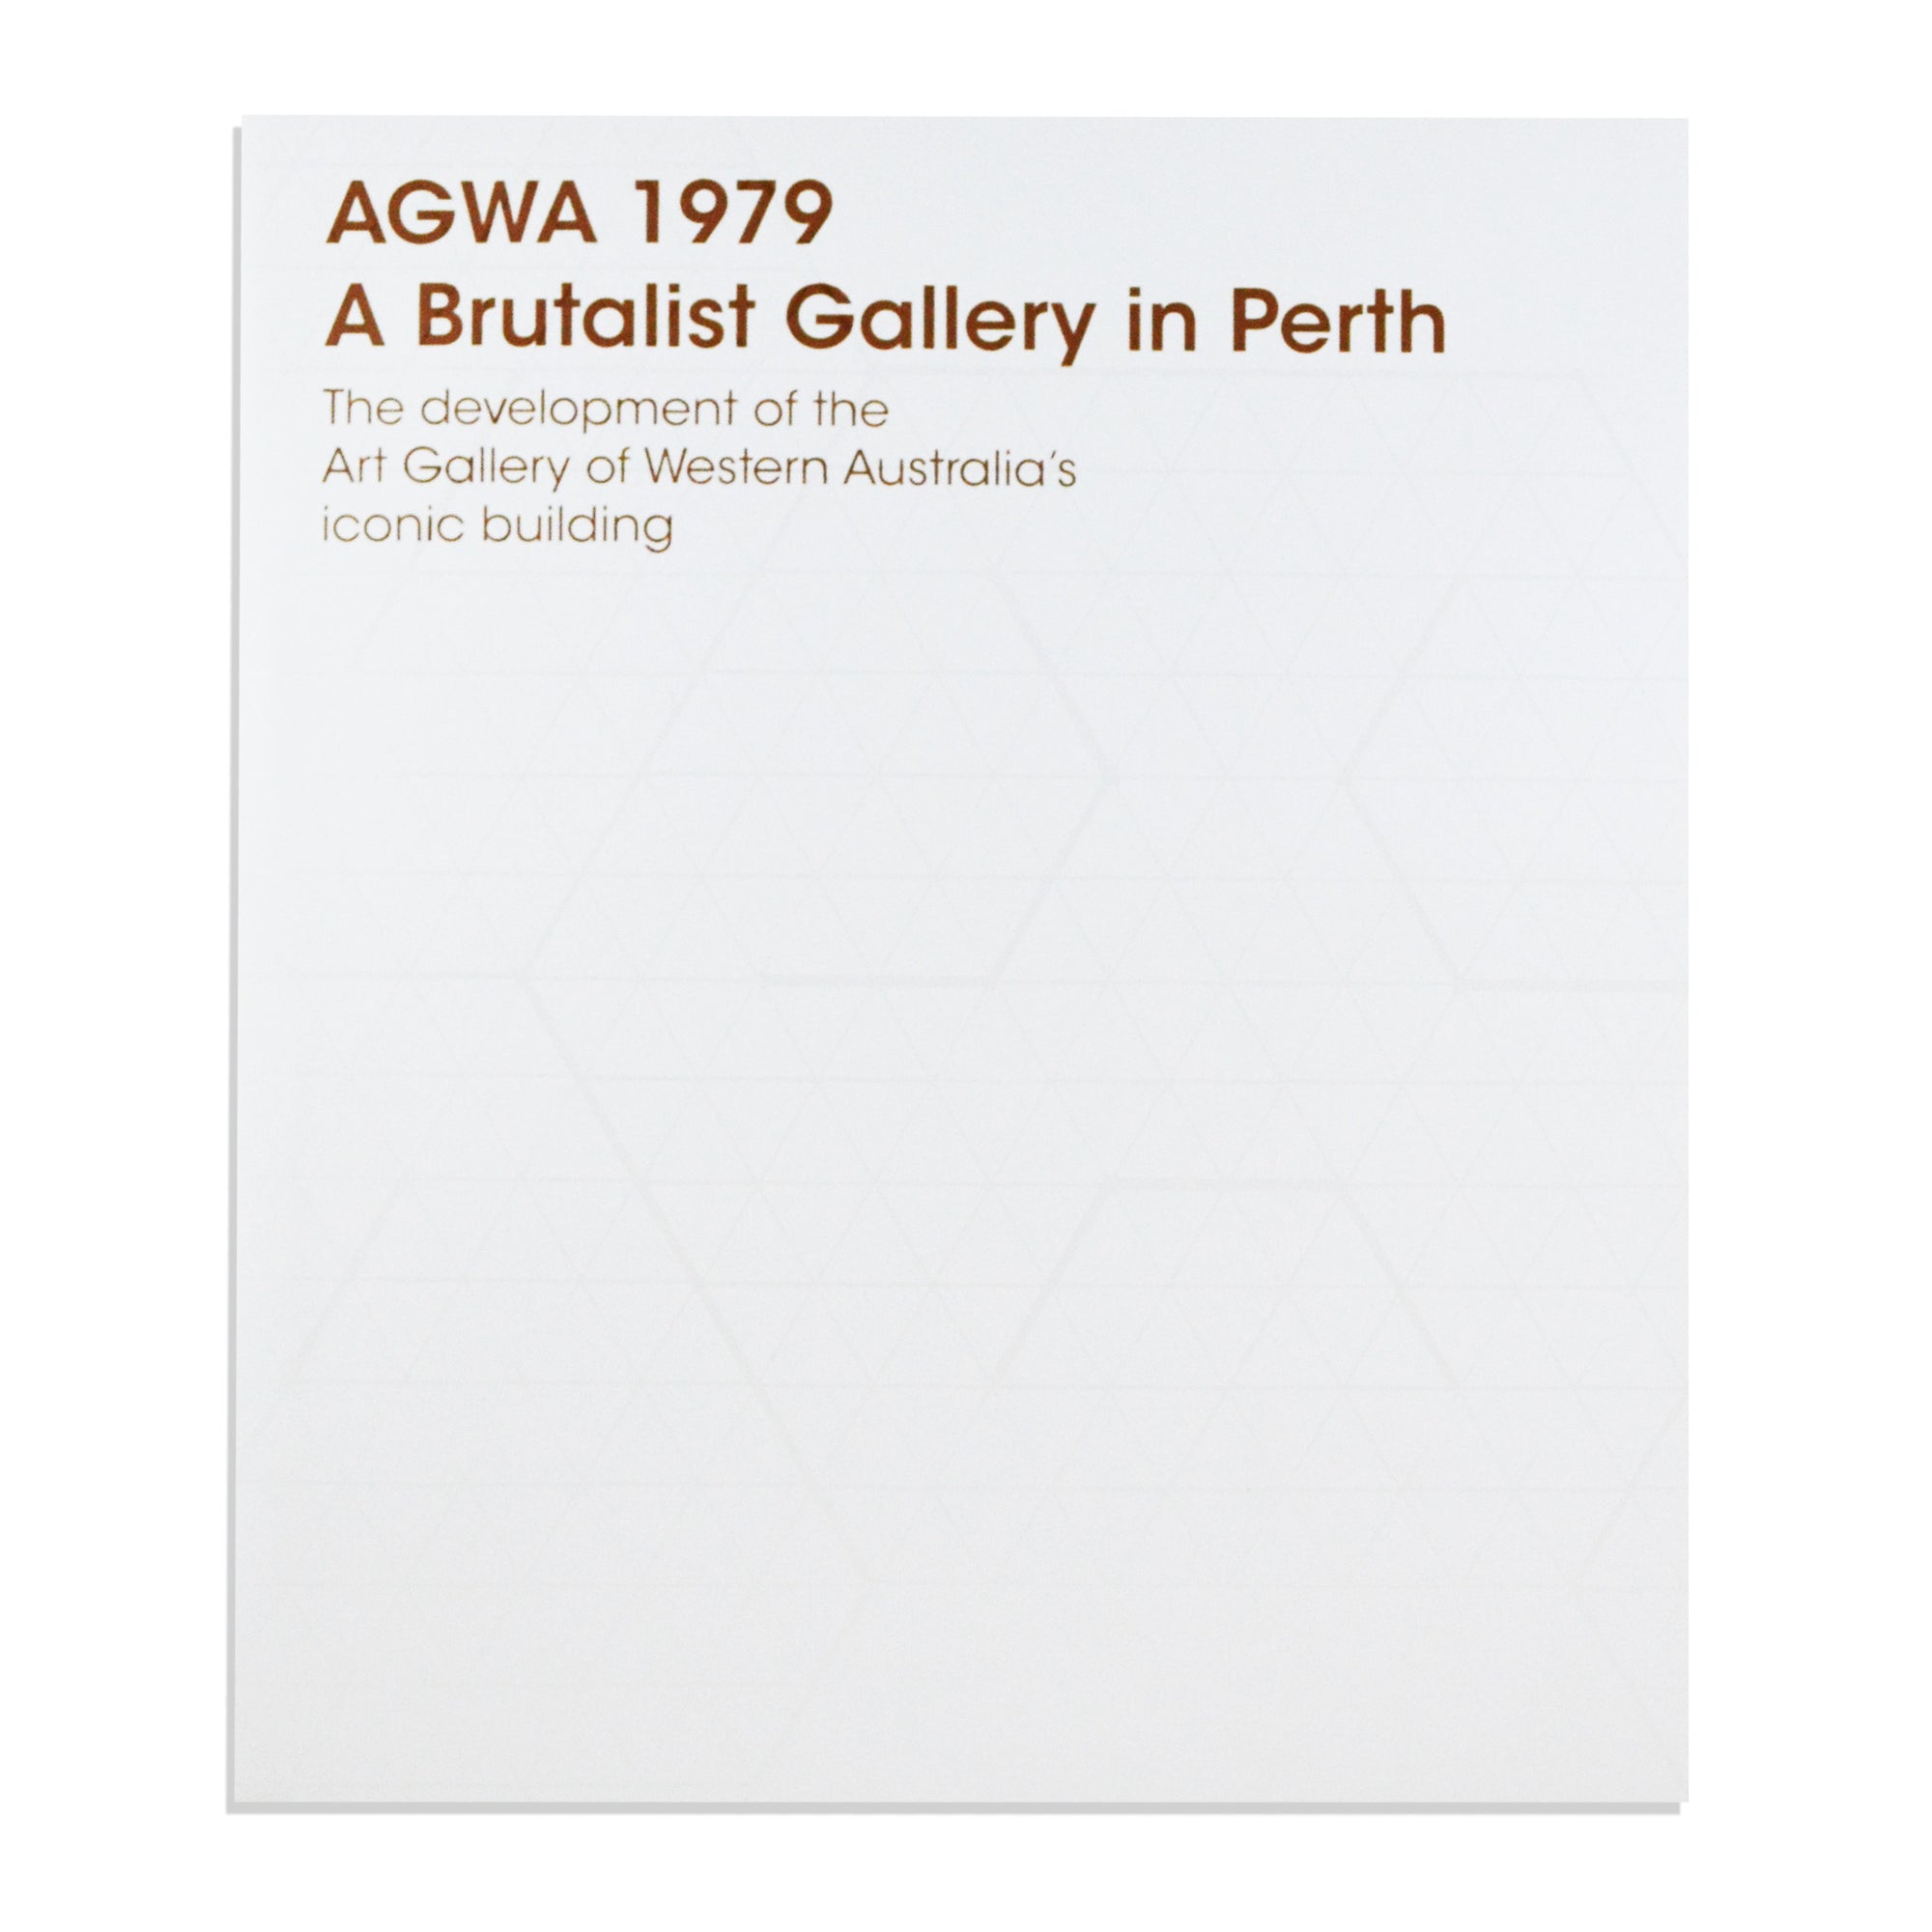 AGWA 1979: A Brutalist Gallery in Perth